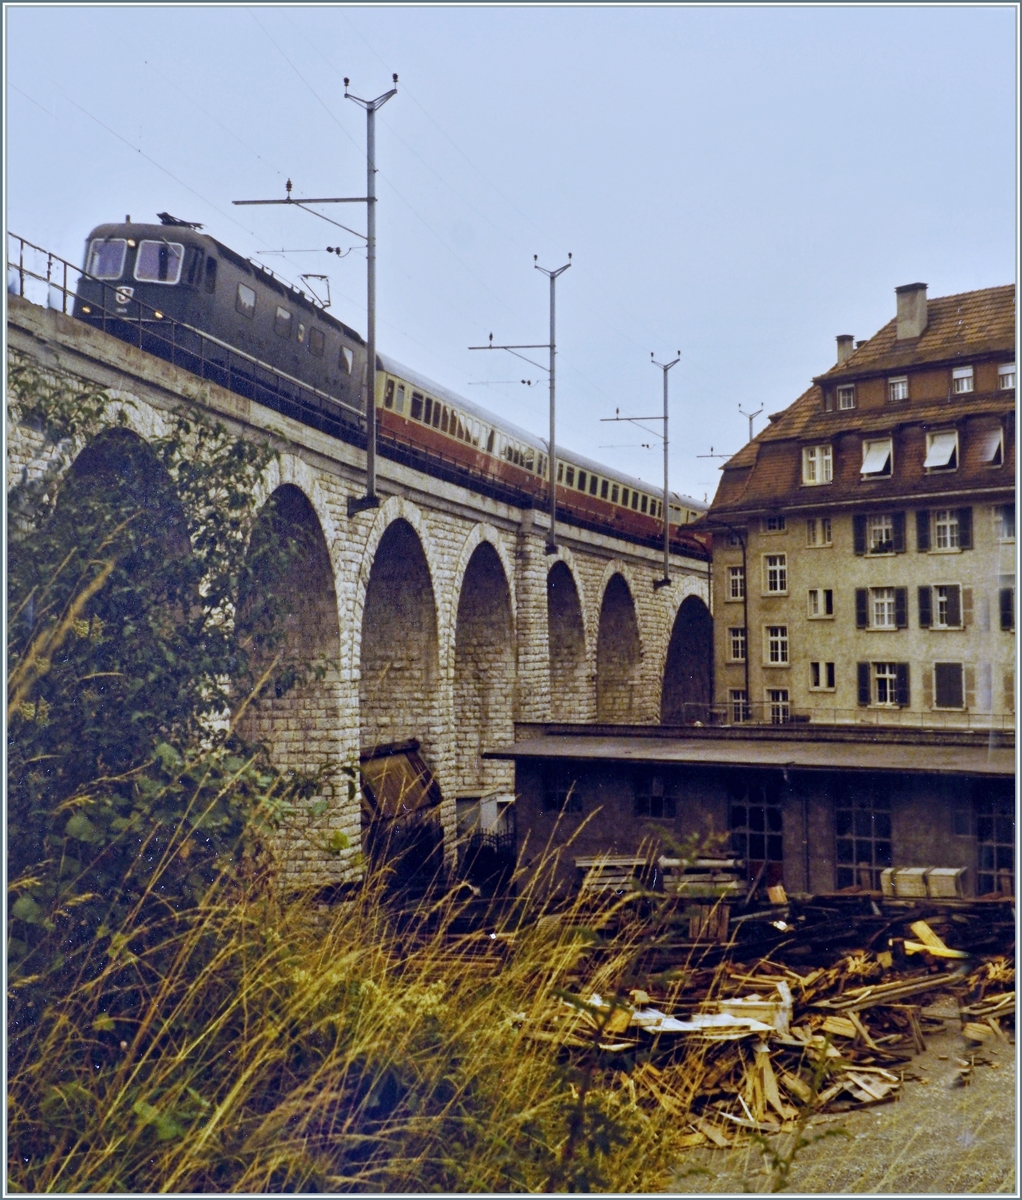 Von einer Re 6/6 gezogen fährt der IC 375  Mont-Blanc  auf dem Oberdorfviadukt in Richtung Grenchenbergtunnel. 

Analogbild vom 4. August 1984